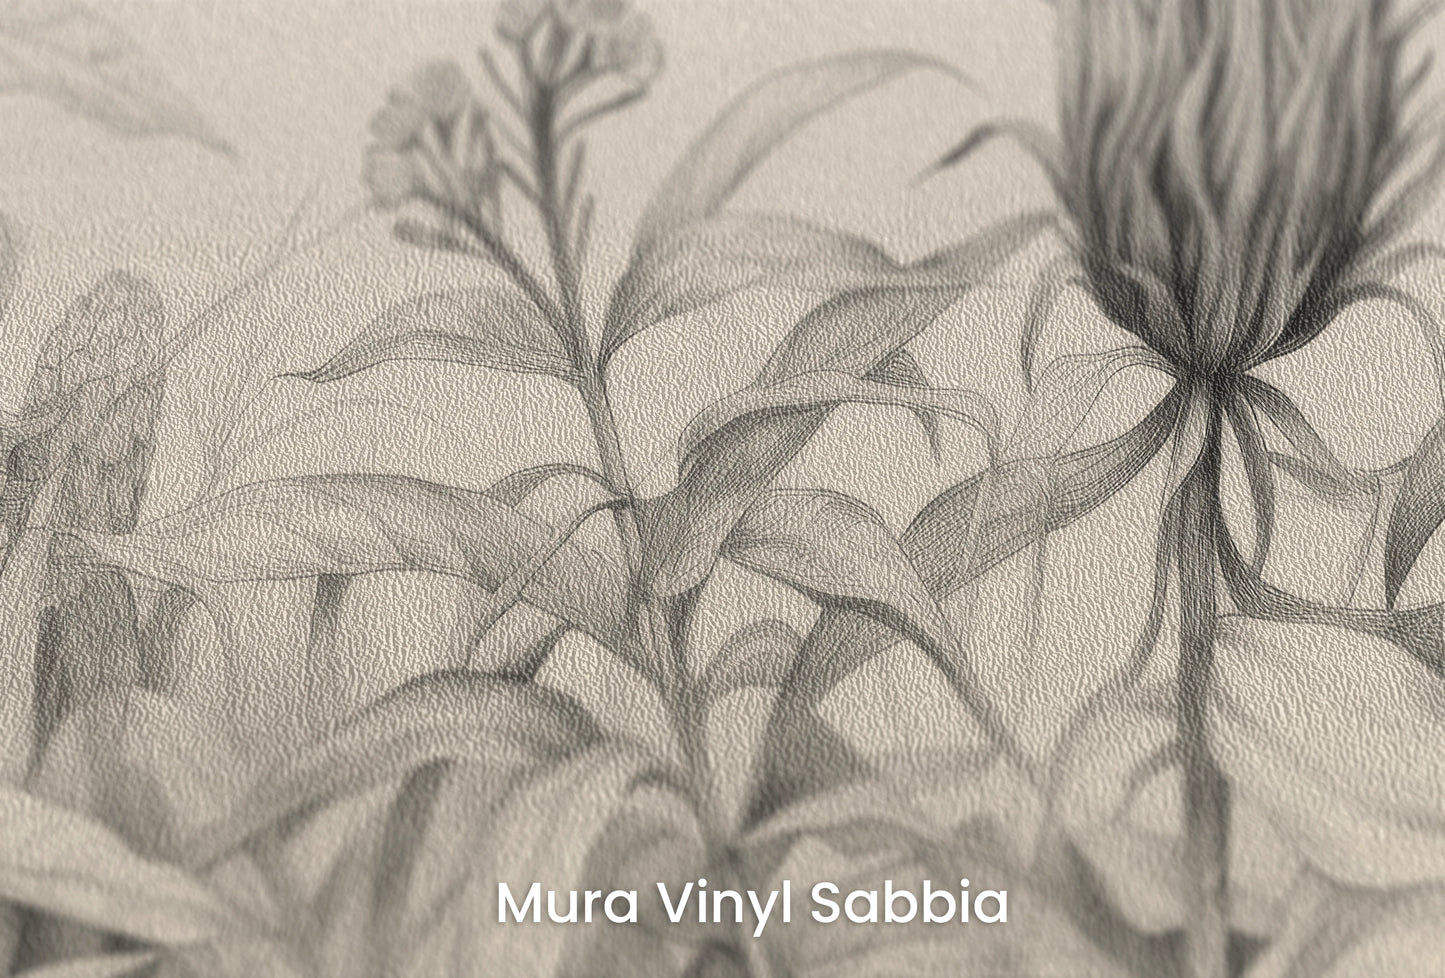 Zbliżenie na artystyczną fototapetę o nazwie Wild Blossoms na podłożu Mura Vinyl Sabbia struktura grubego ziarna piasku.